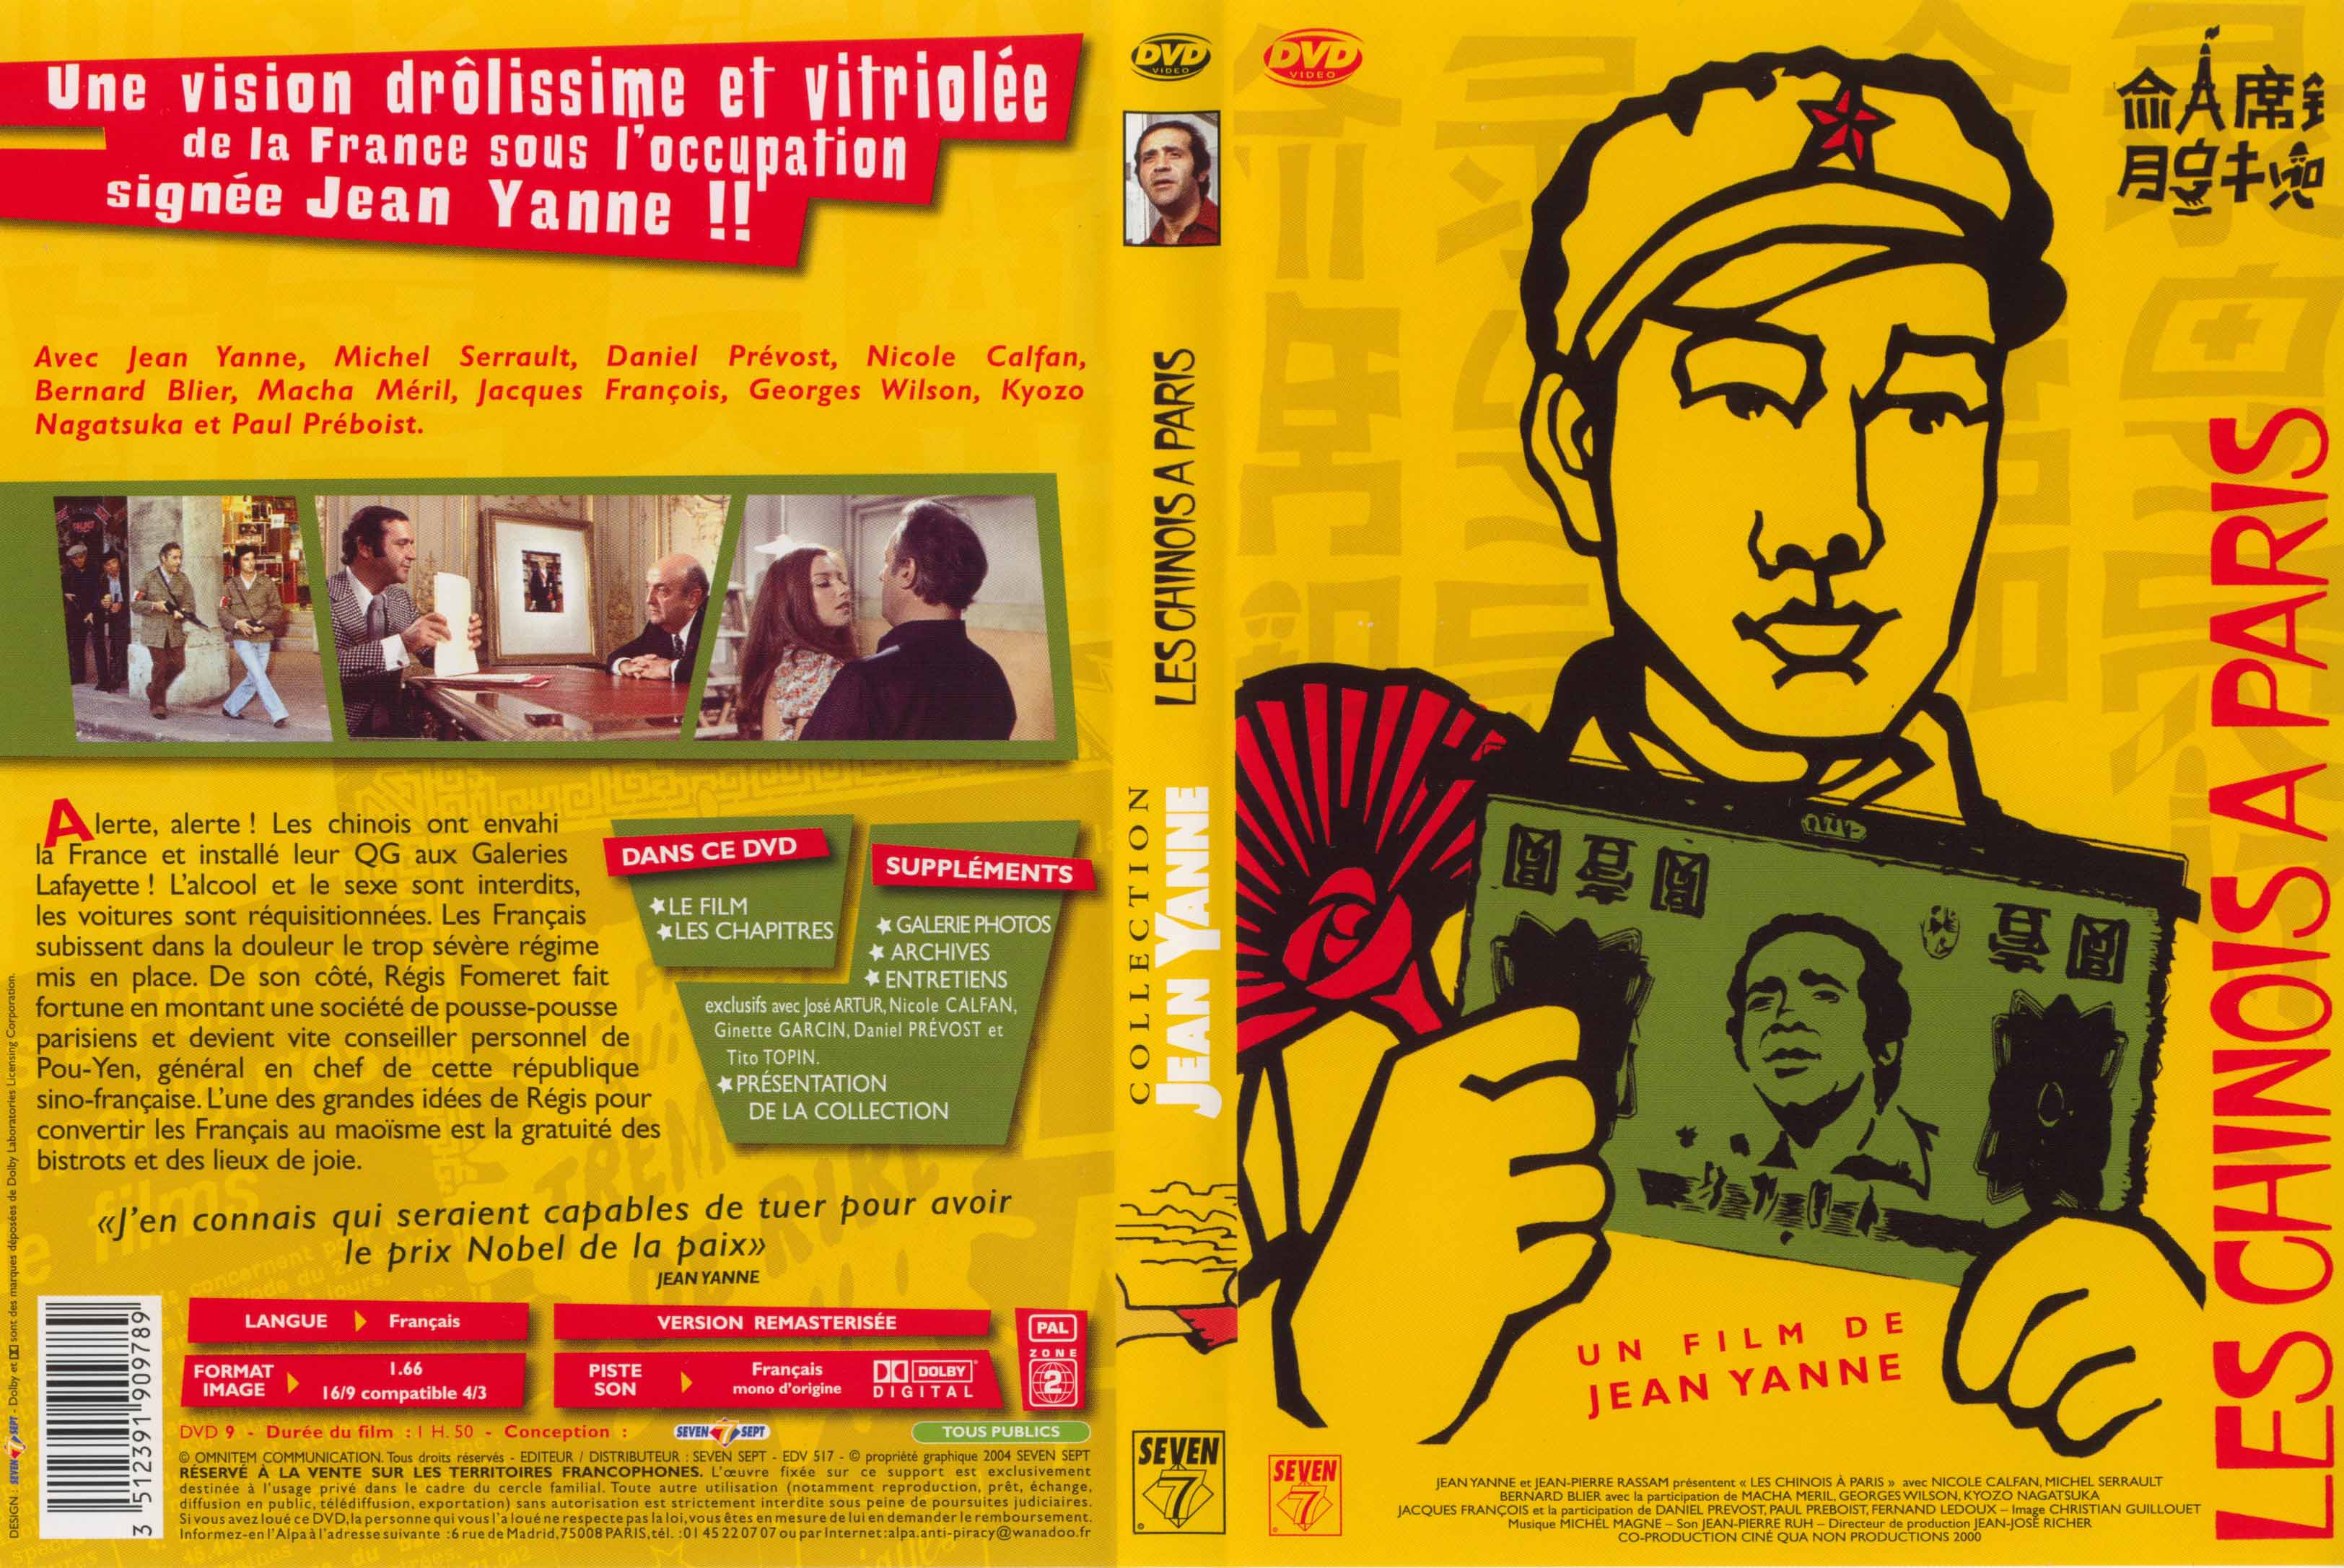 Jaquette DVD Les chinois  Paris